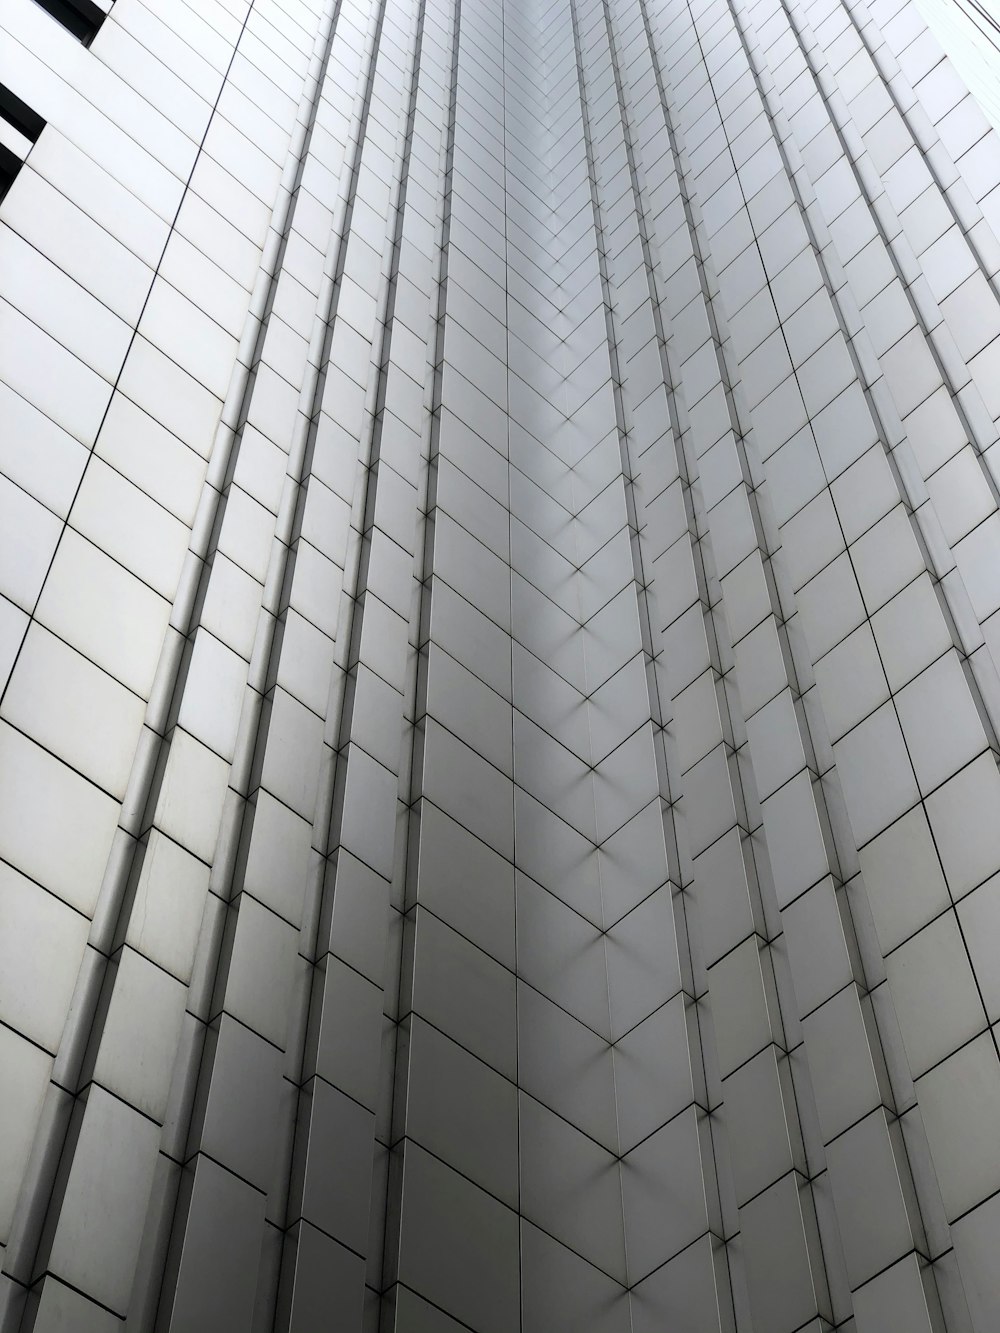 고층 건물의 낮은 각도 사진